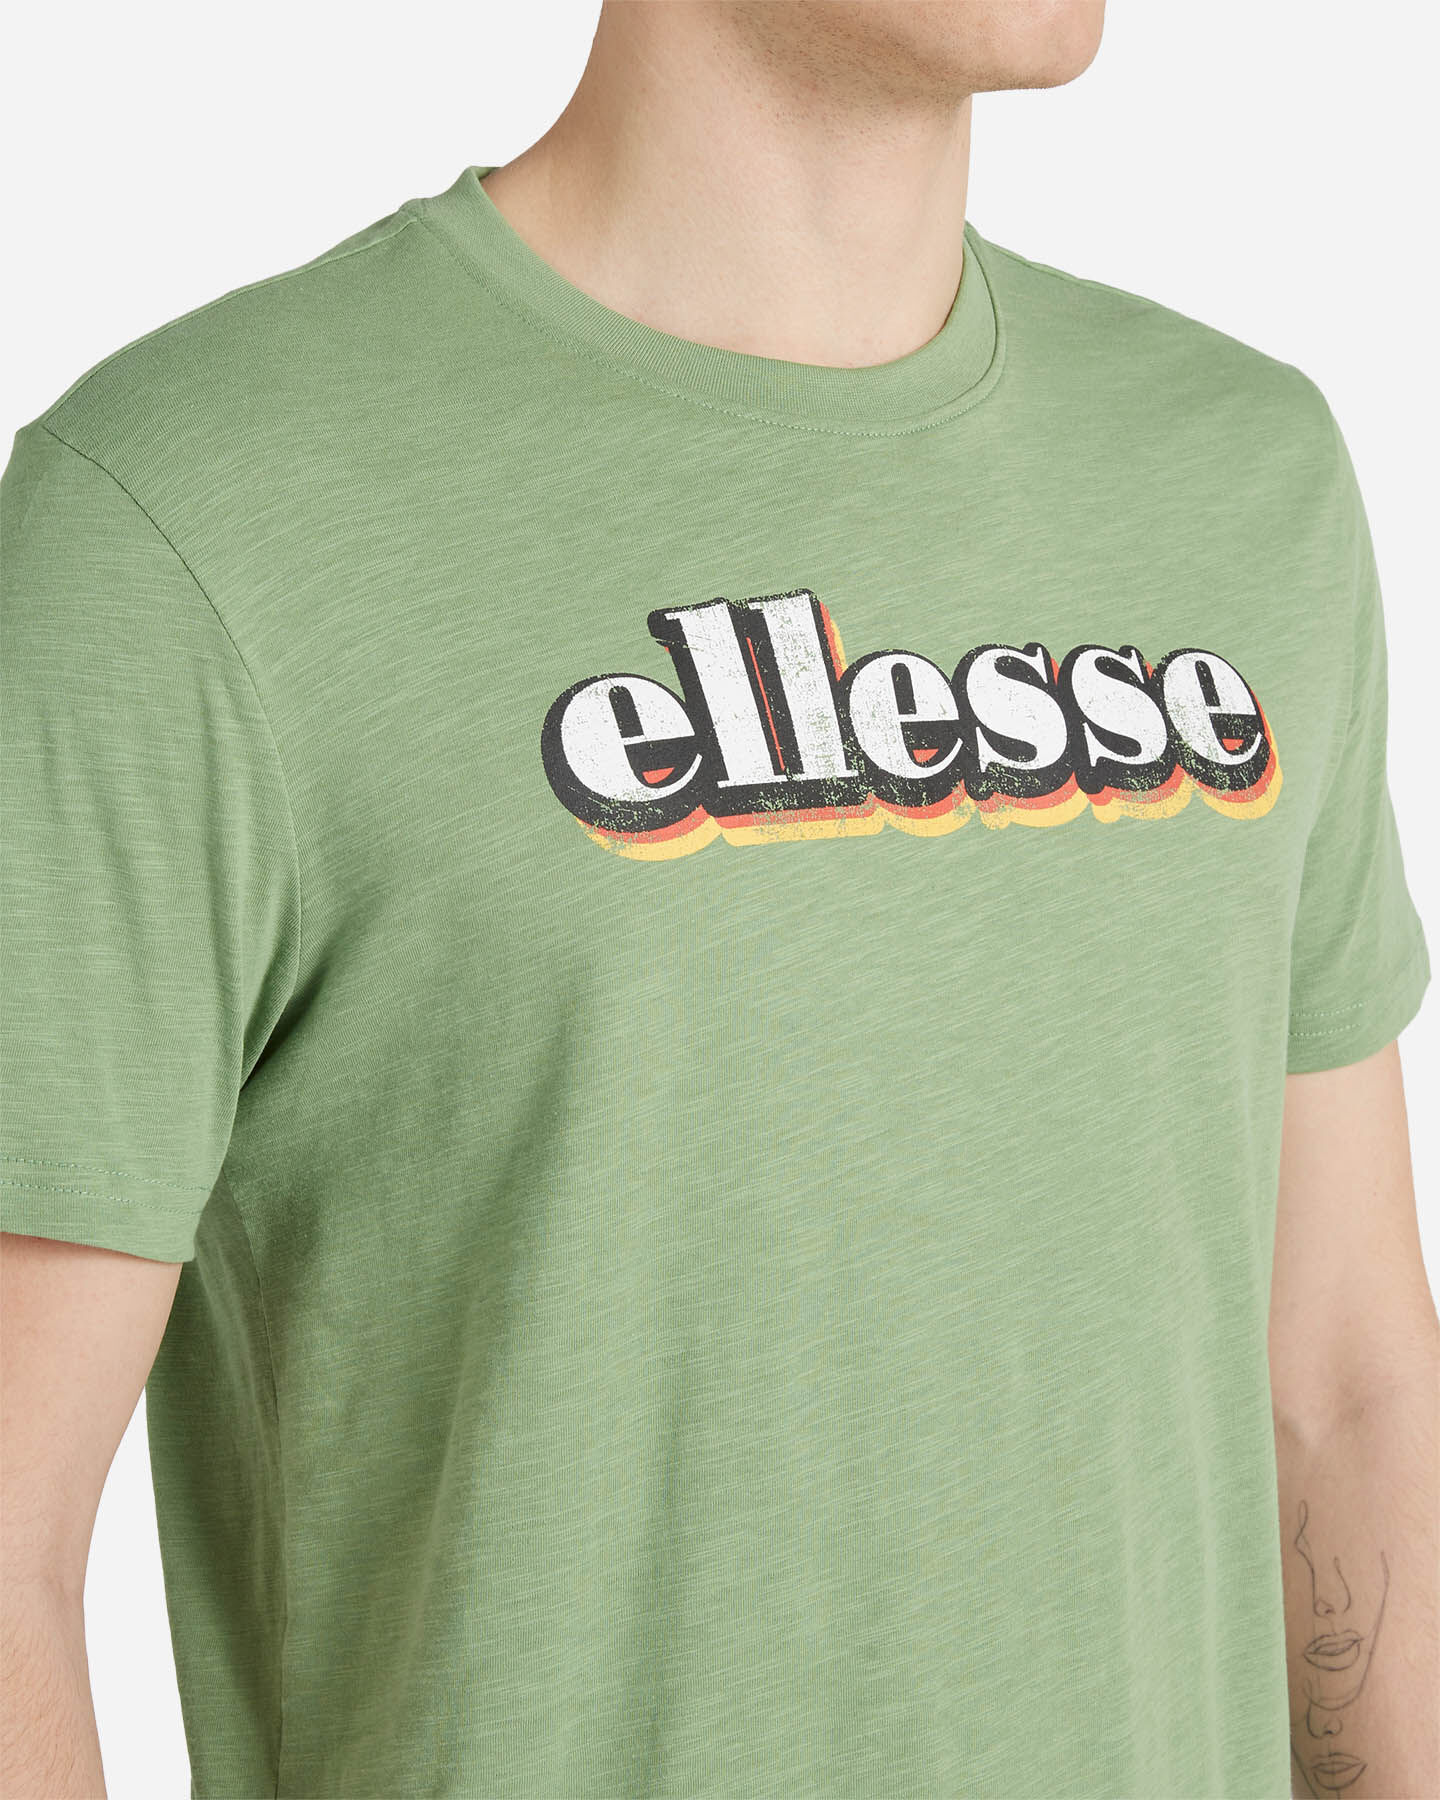  T-Shirt ELLESSE VINTAGE M S4120110|755|XS scatto 4